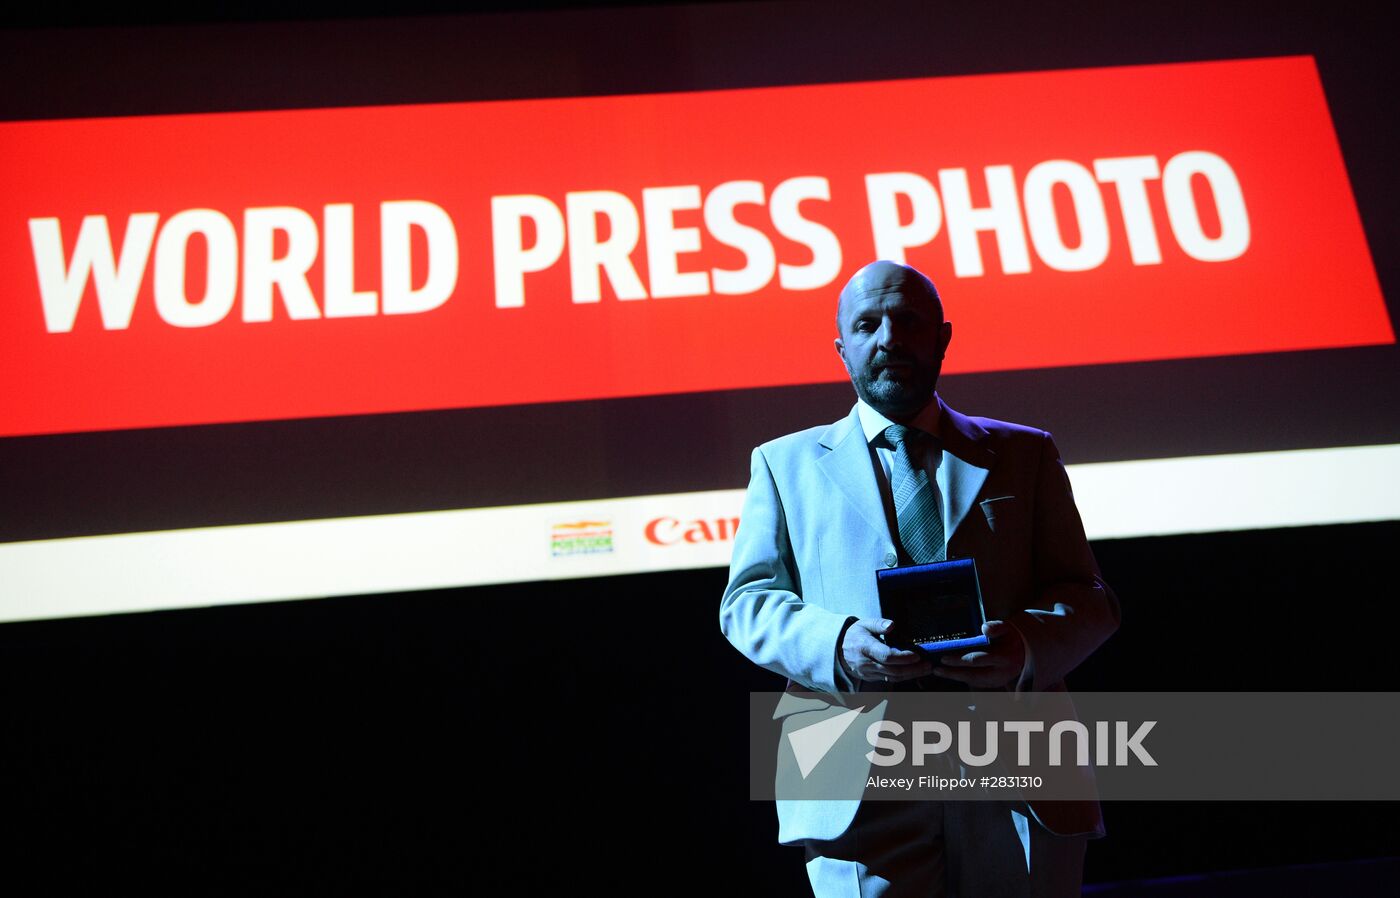 Rossiya Segodnyaya news agency photojournalist Vladimir Presnya awarded World Press Photo